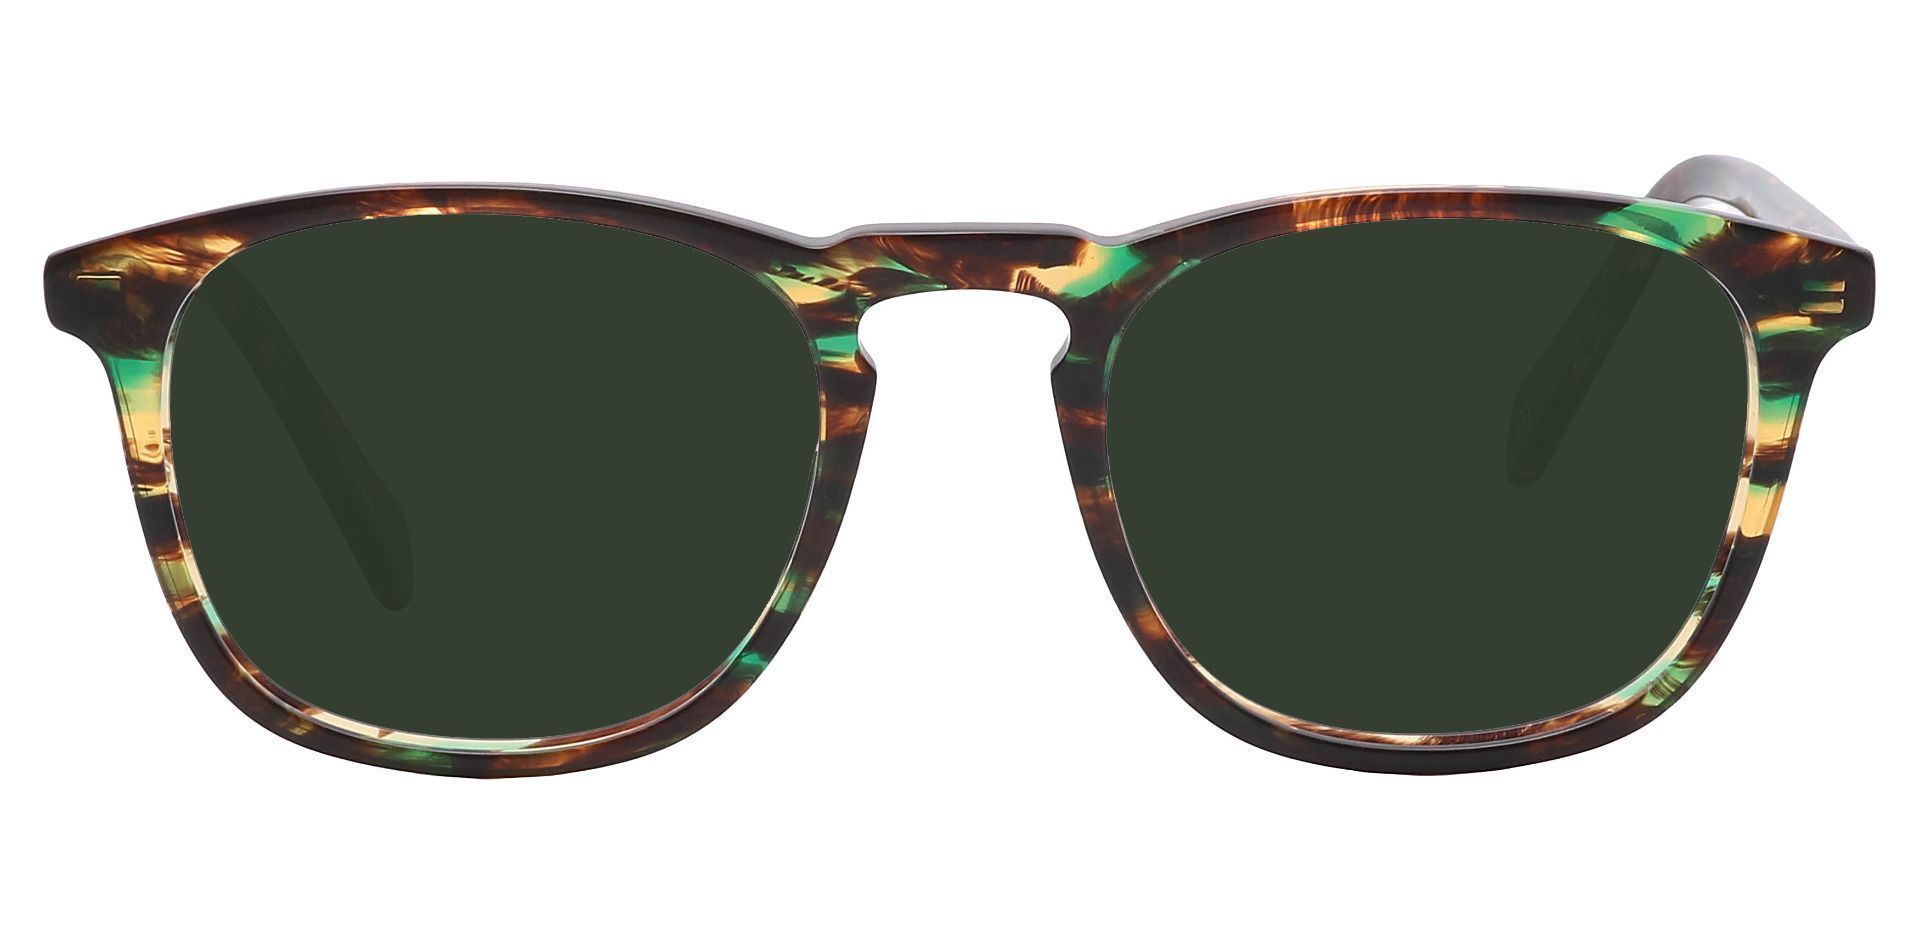 Venti Square Non-Rx Sunglasses - Green Frame With Green Lenses